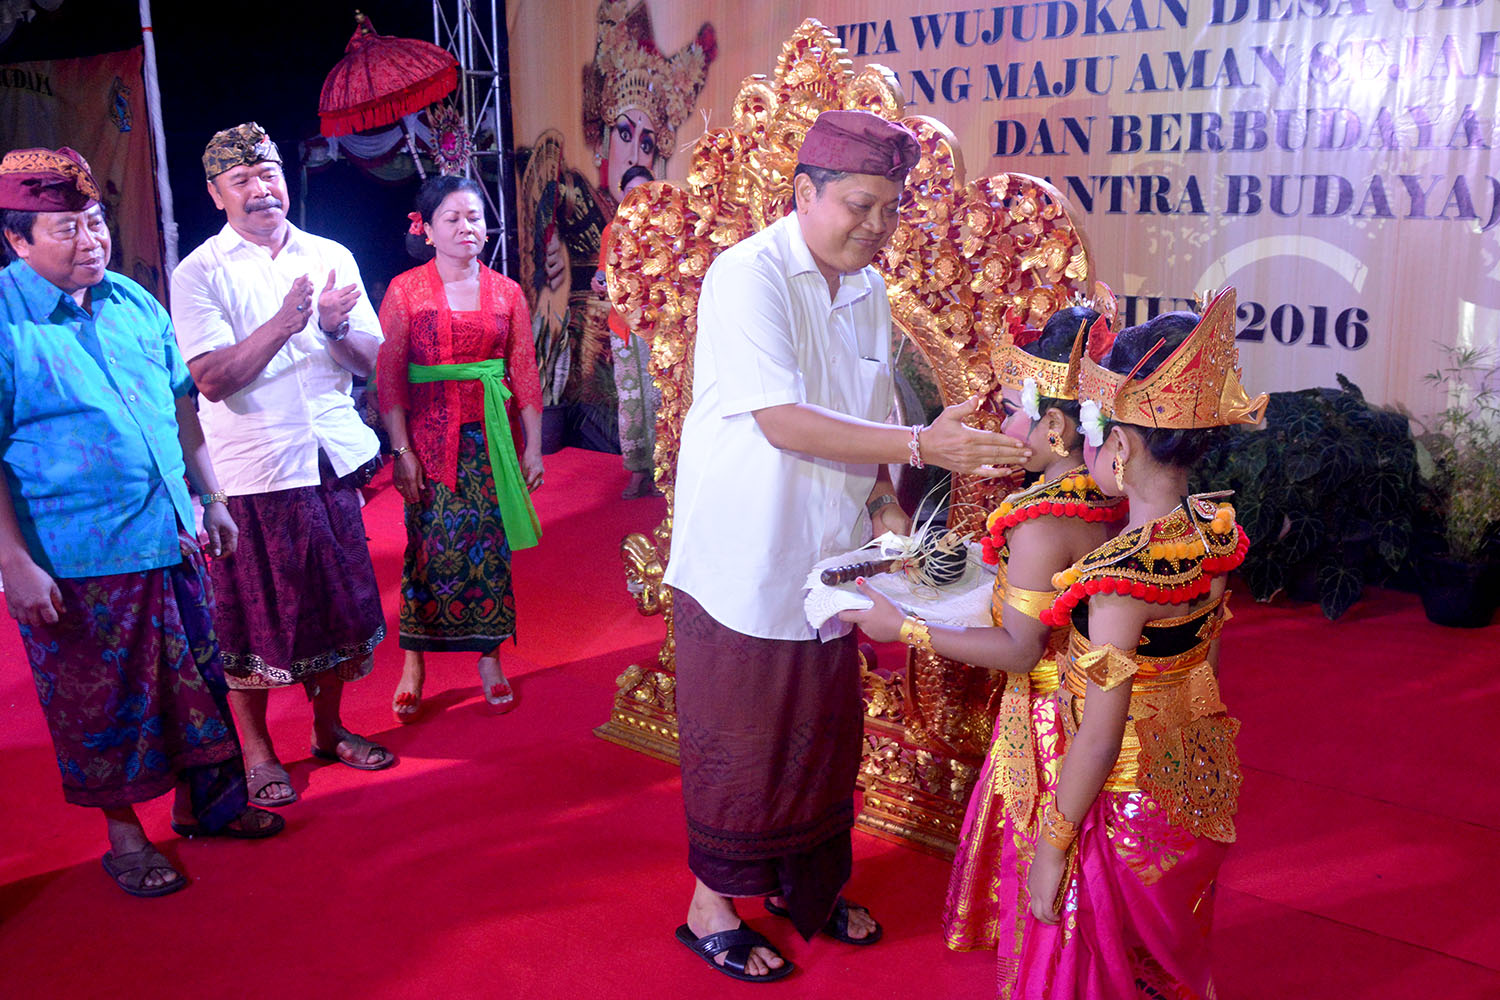 Walikota Denpasar IB Rai Dharmawijaya Mantra, yang pada kesempatan ini di dampingi Plt. Kepala Dinas Kebudayaan Kota Denpasar Ni Nyoman Sujati dan Camat Denpasar Utara Nyoman Lodra, sekaligus membuka acara pentas budaya yang ditandai dengan pemukulan gong.